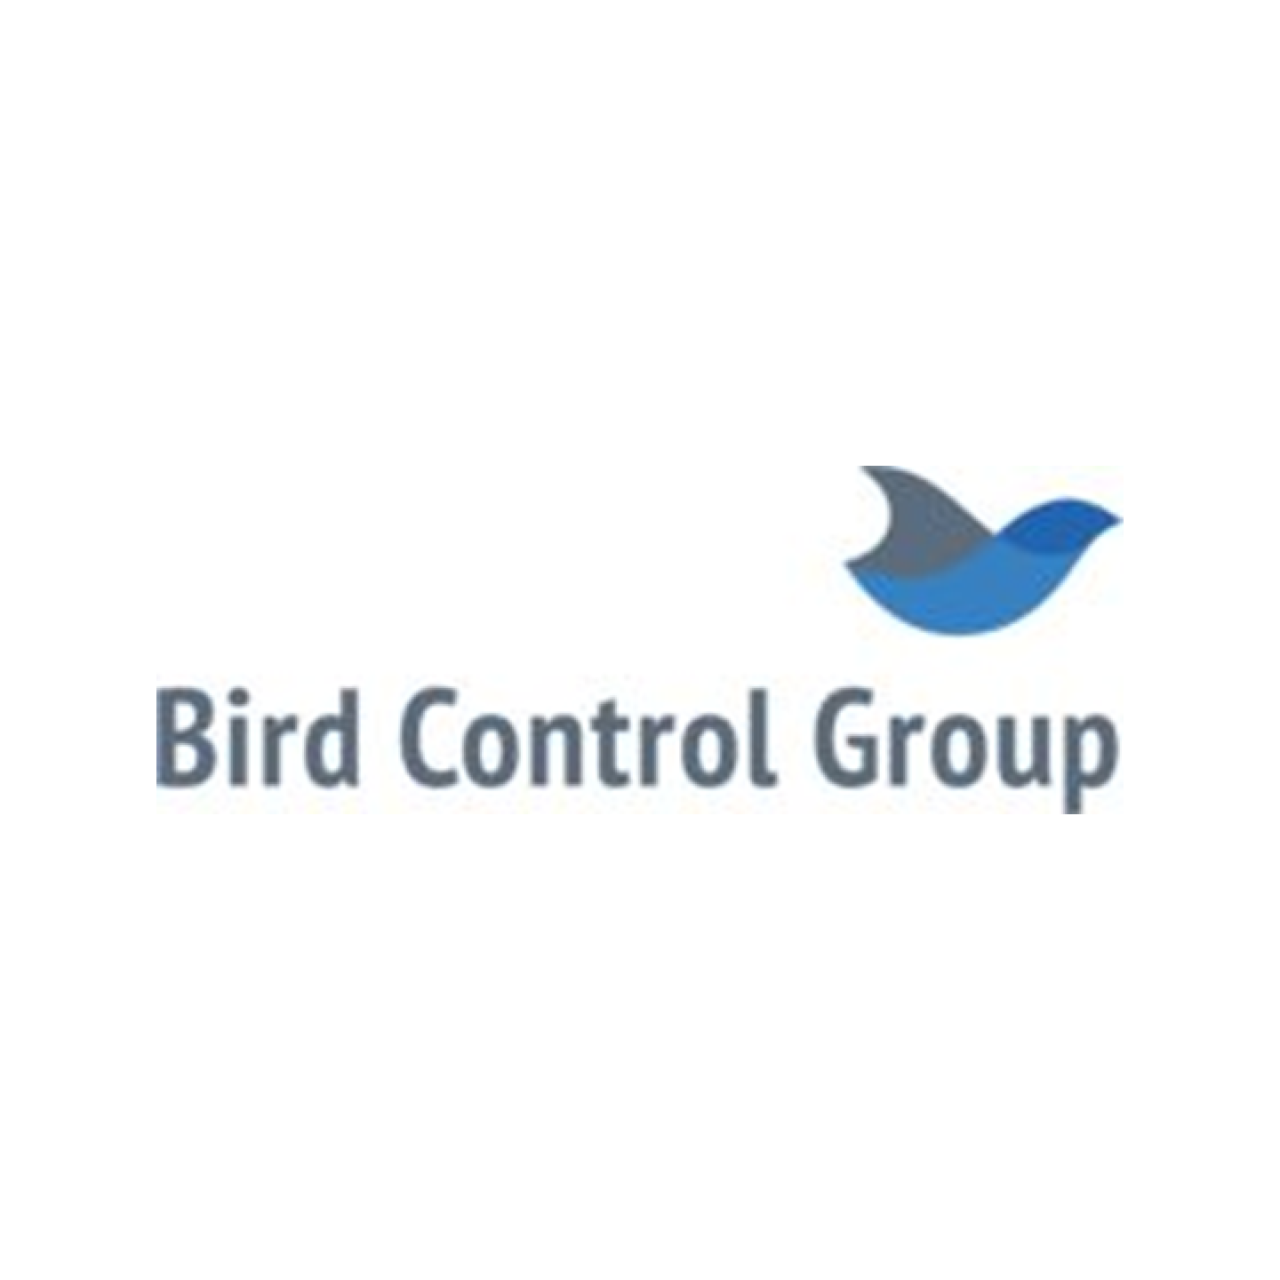 Bird Control Group logo.